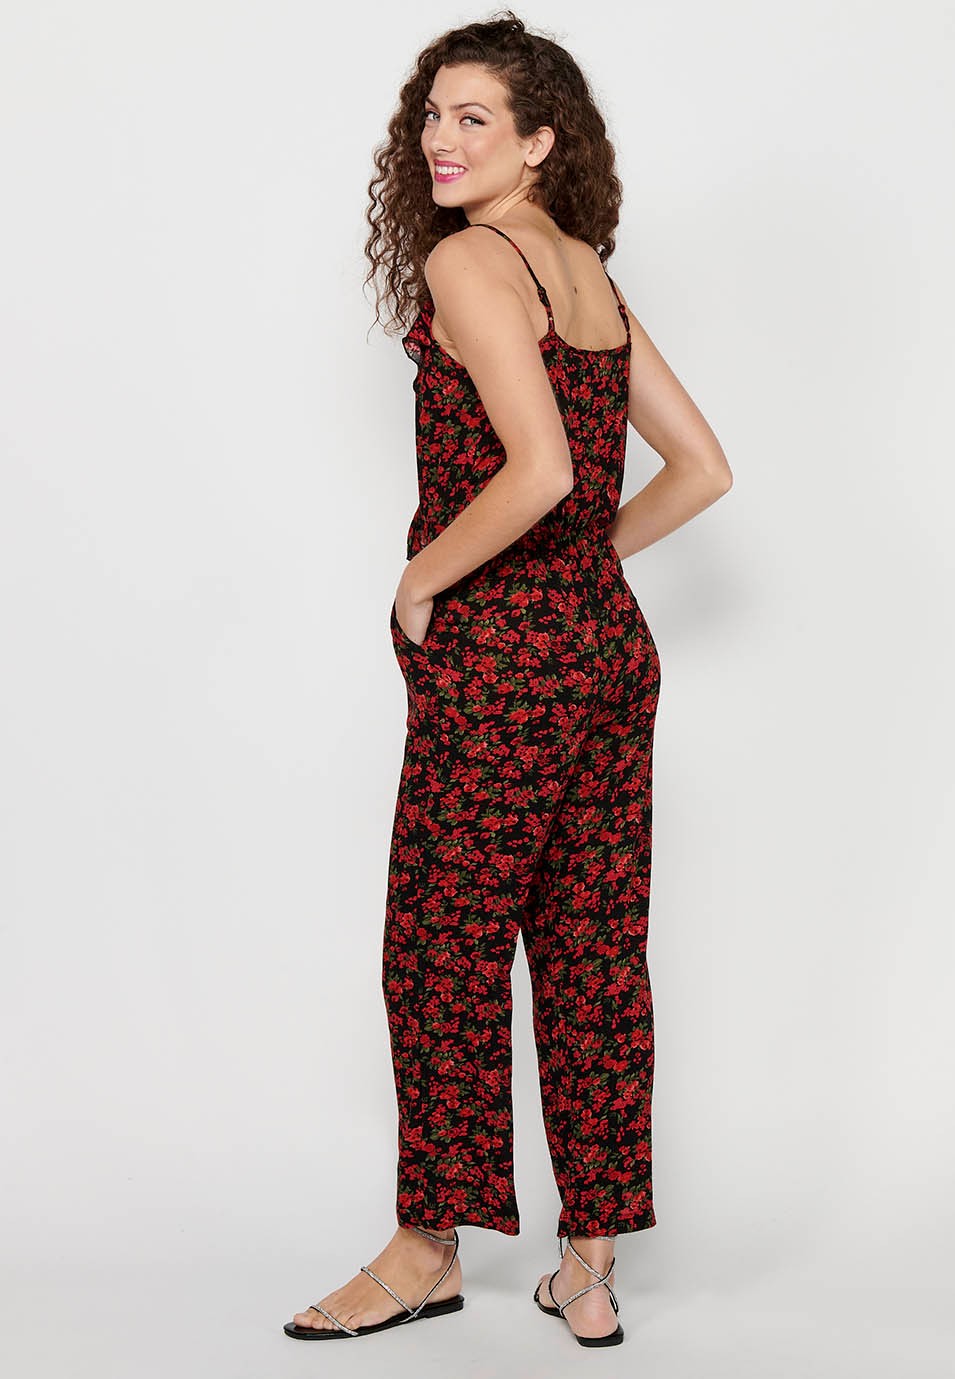 Pantalon habillé long à bretelles réglables avec taille caoutchoutée et imprimé floral rouge pour Femme 8